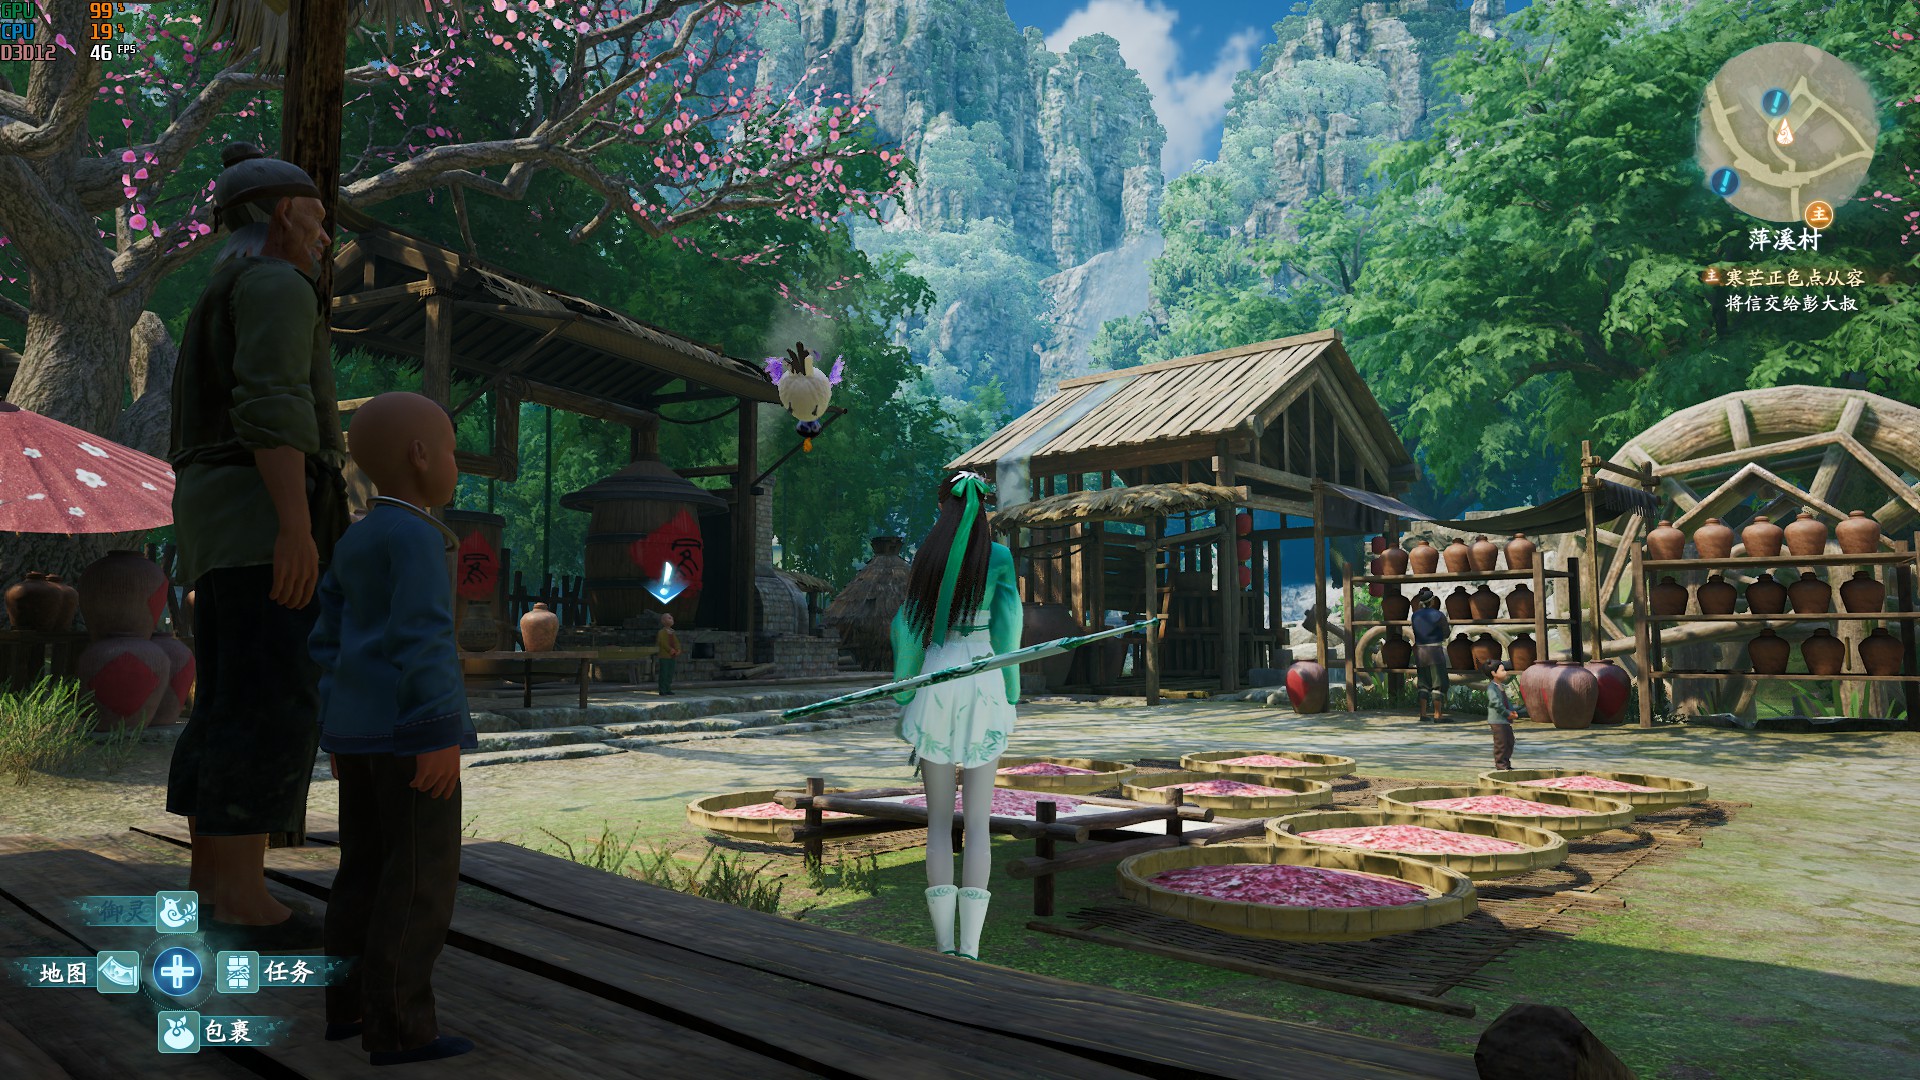 《仙劍奇俠傳7》畫面各項設置視覺效果對比 - 第19張